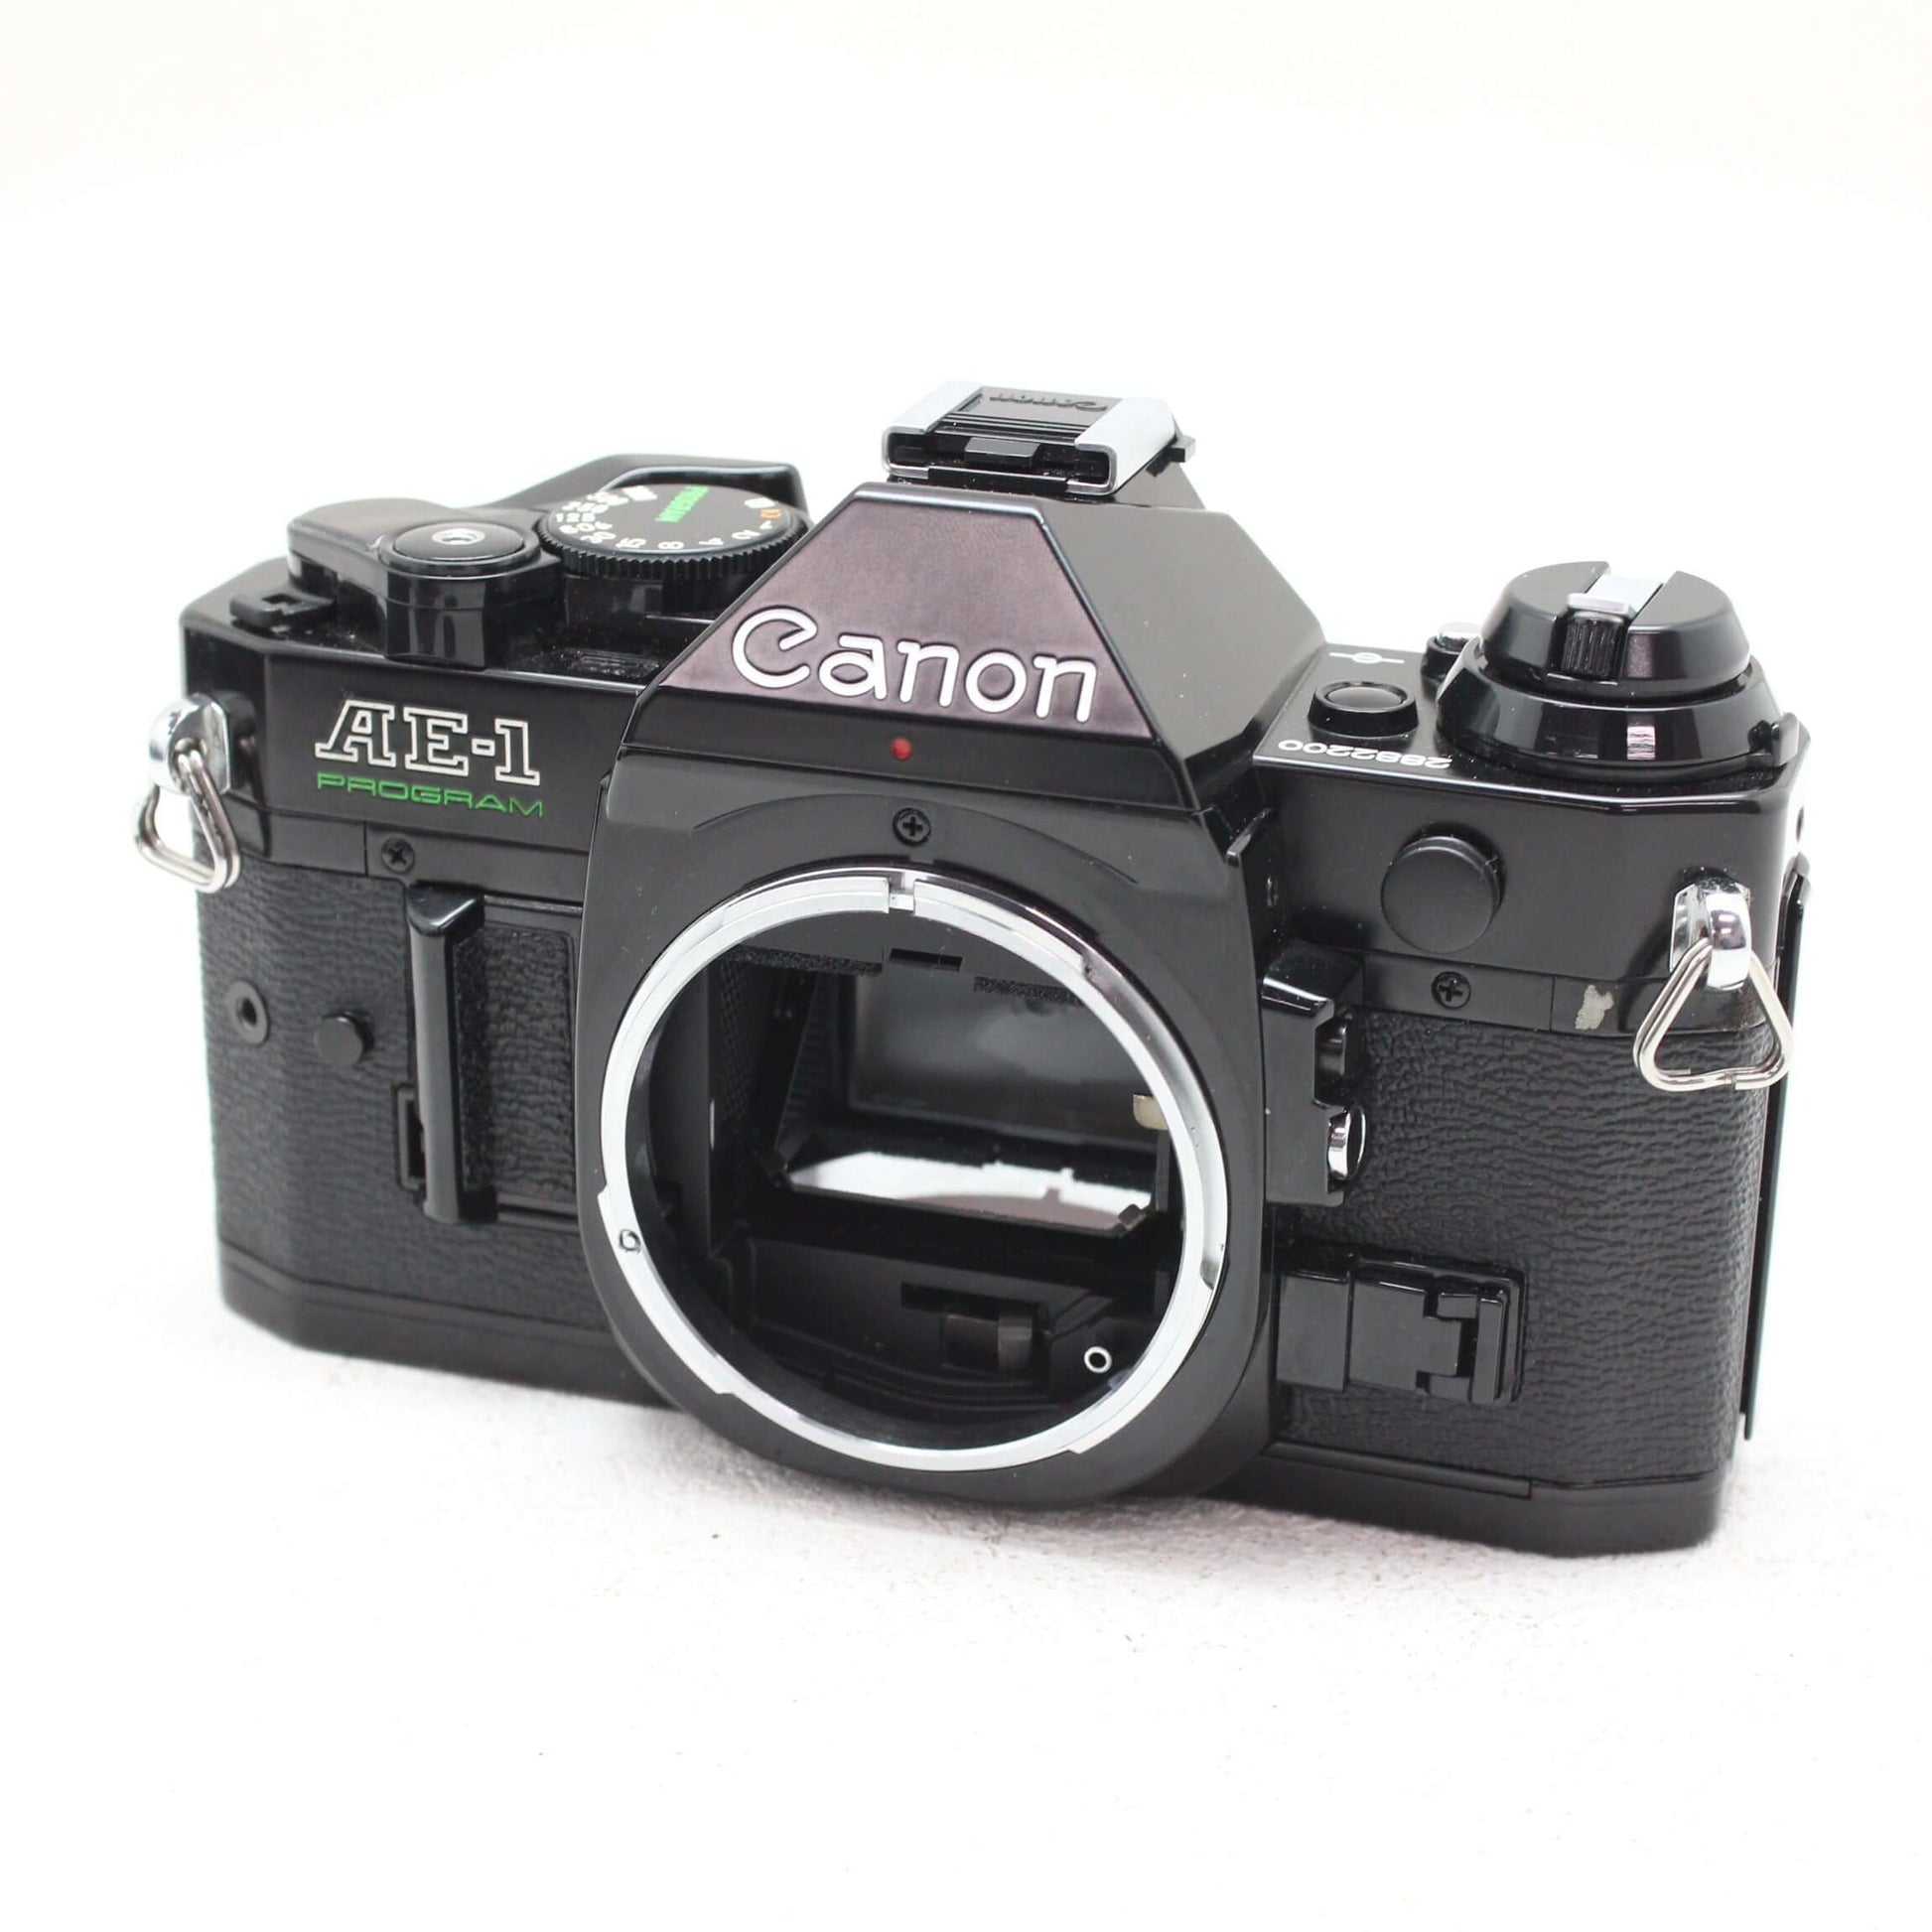 中古品 Canon AE-1 PROGRAM ブラック【3月26日(火)のYouTube生配信でご紹介】